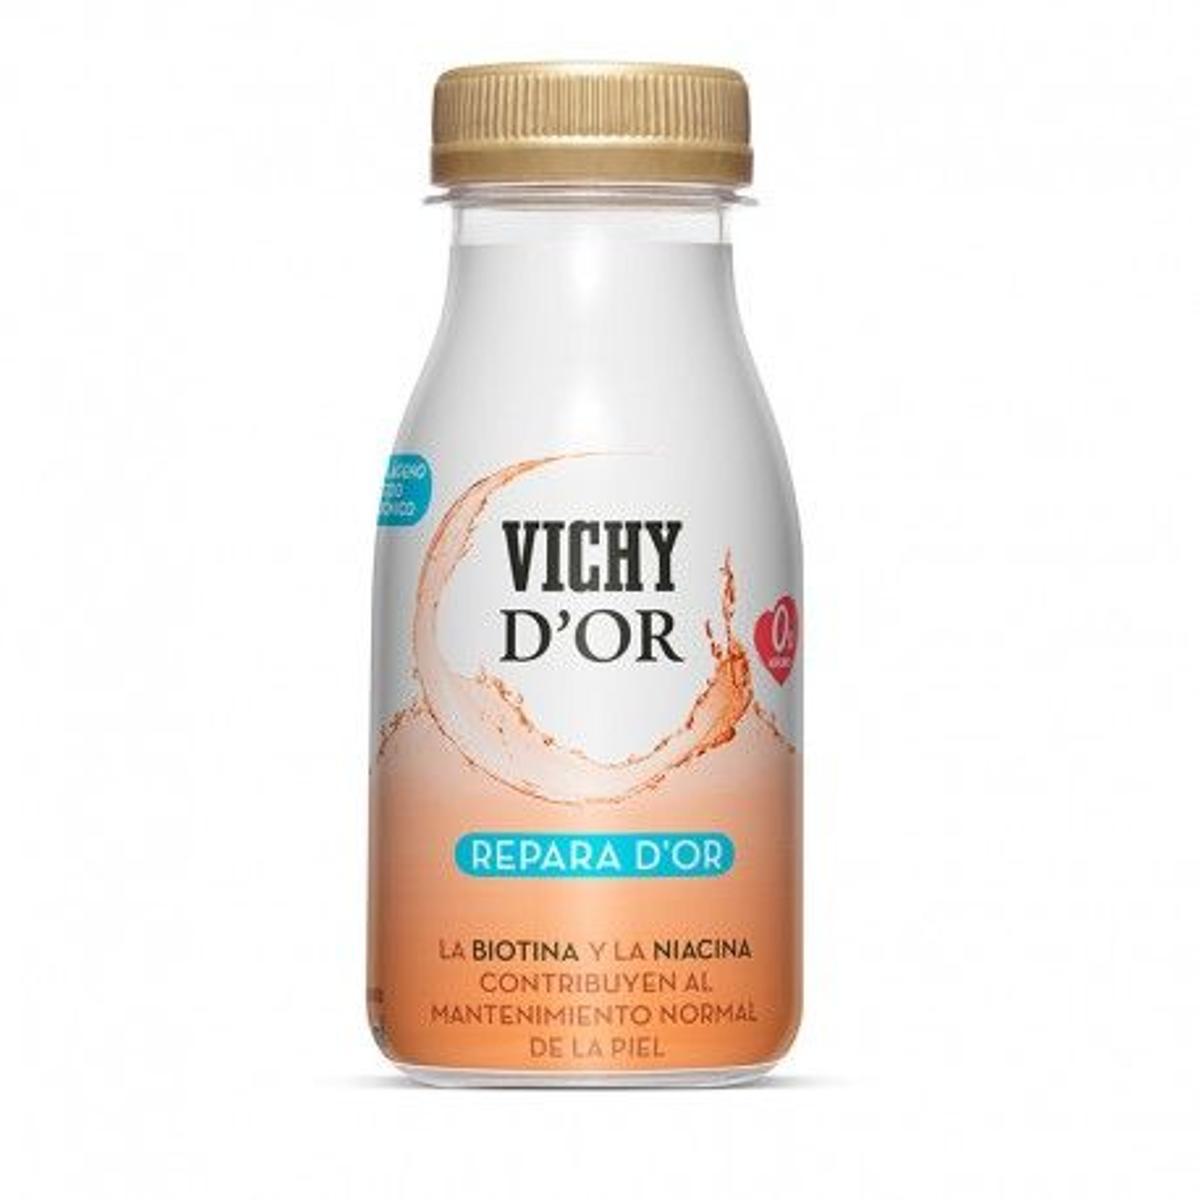 Repara d´Or Tratamiento reparador de la piel es una de las bebidas funcionales de Vichy generada a partir de la combinación de la calidad del agua Vichy Catalan